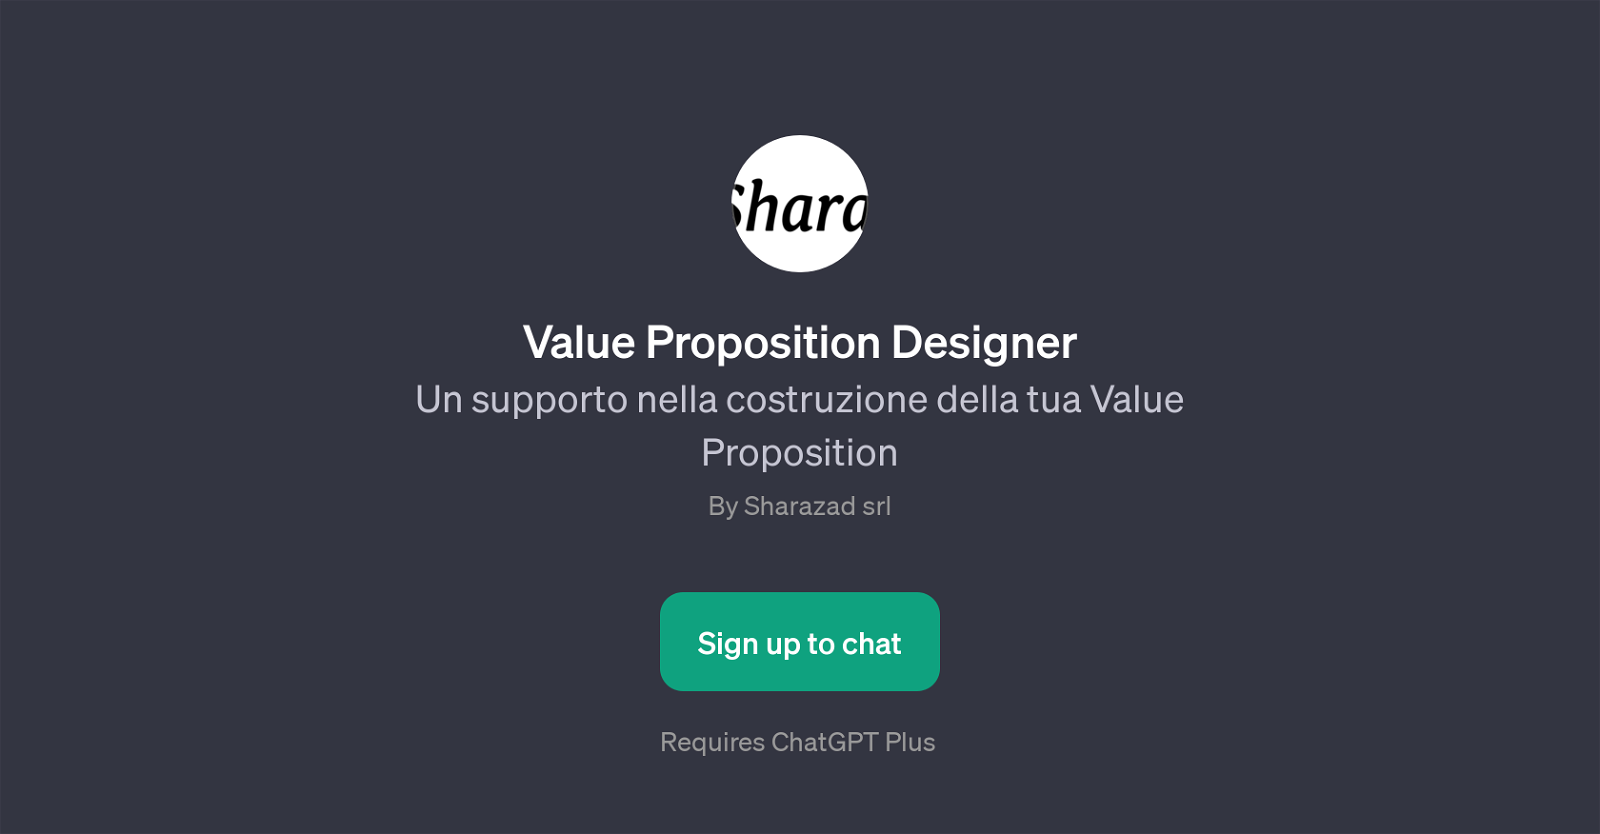 Value Proposition Designer website